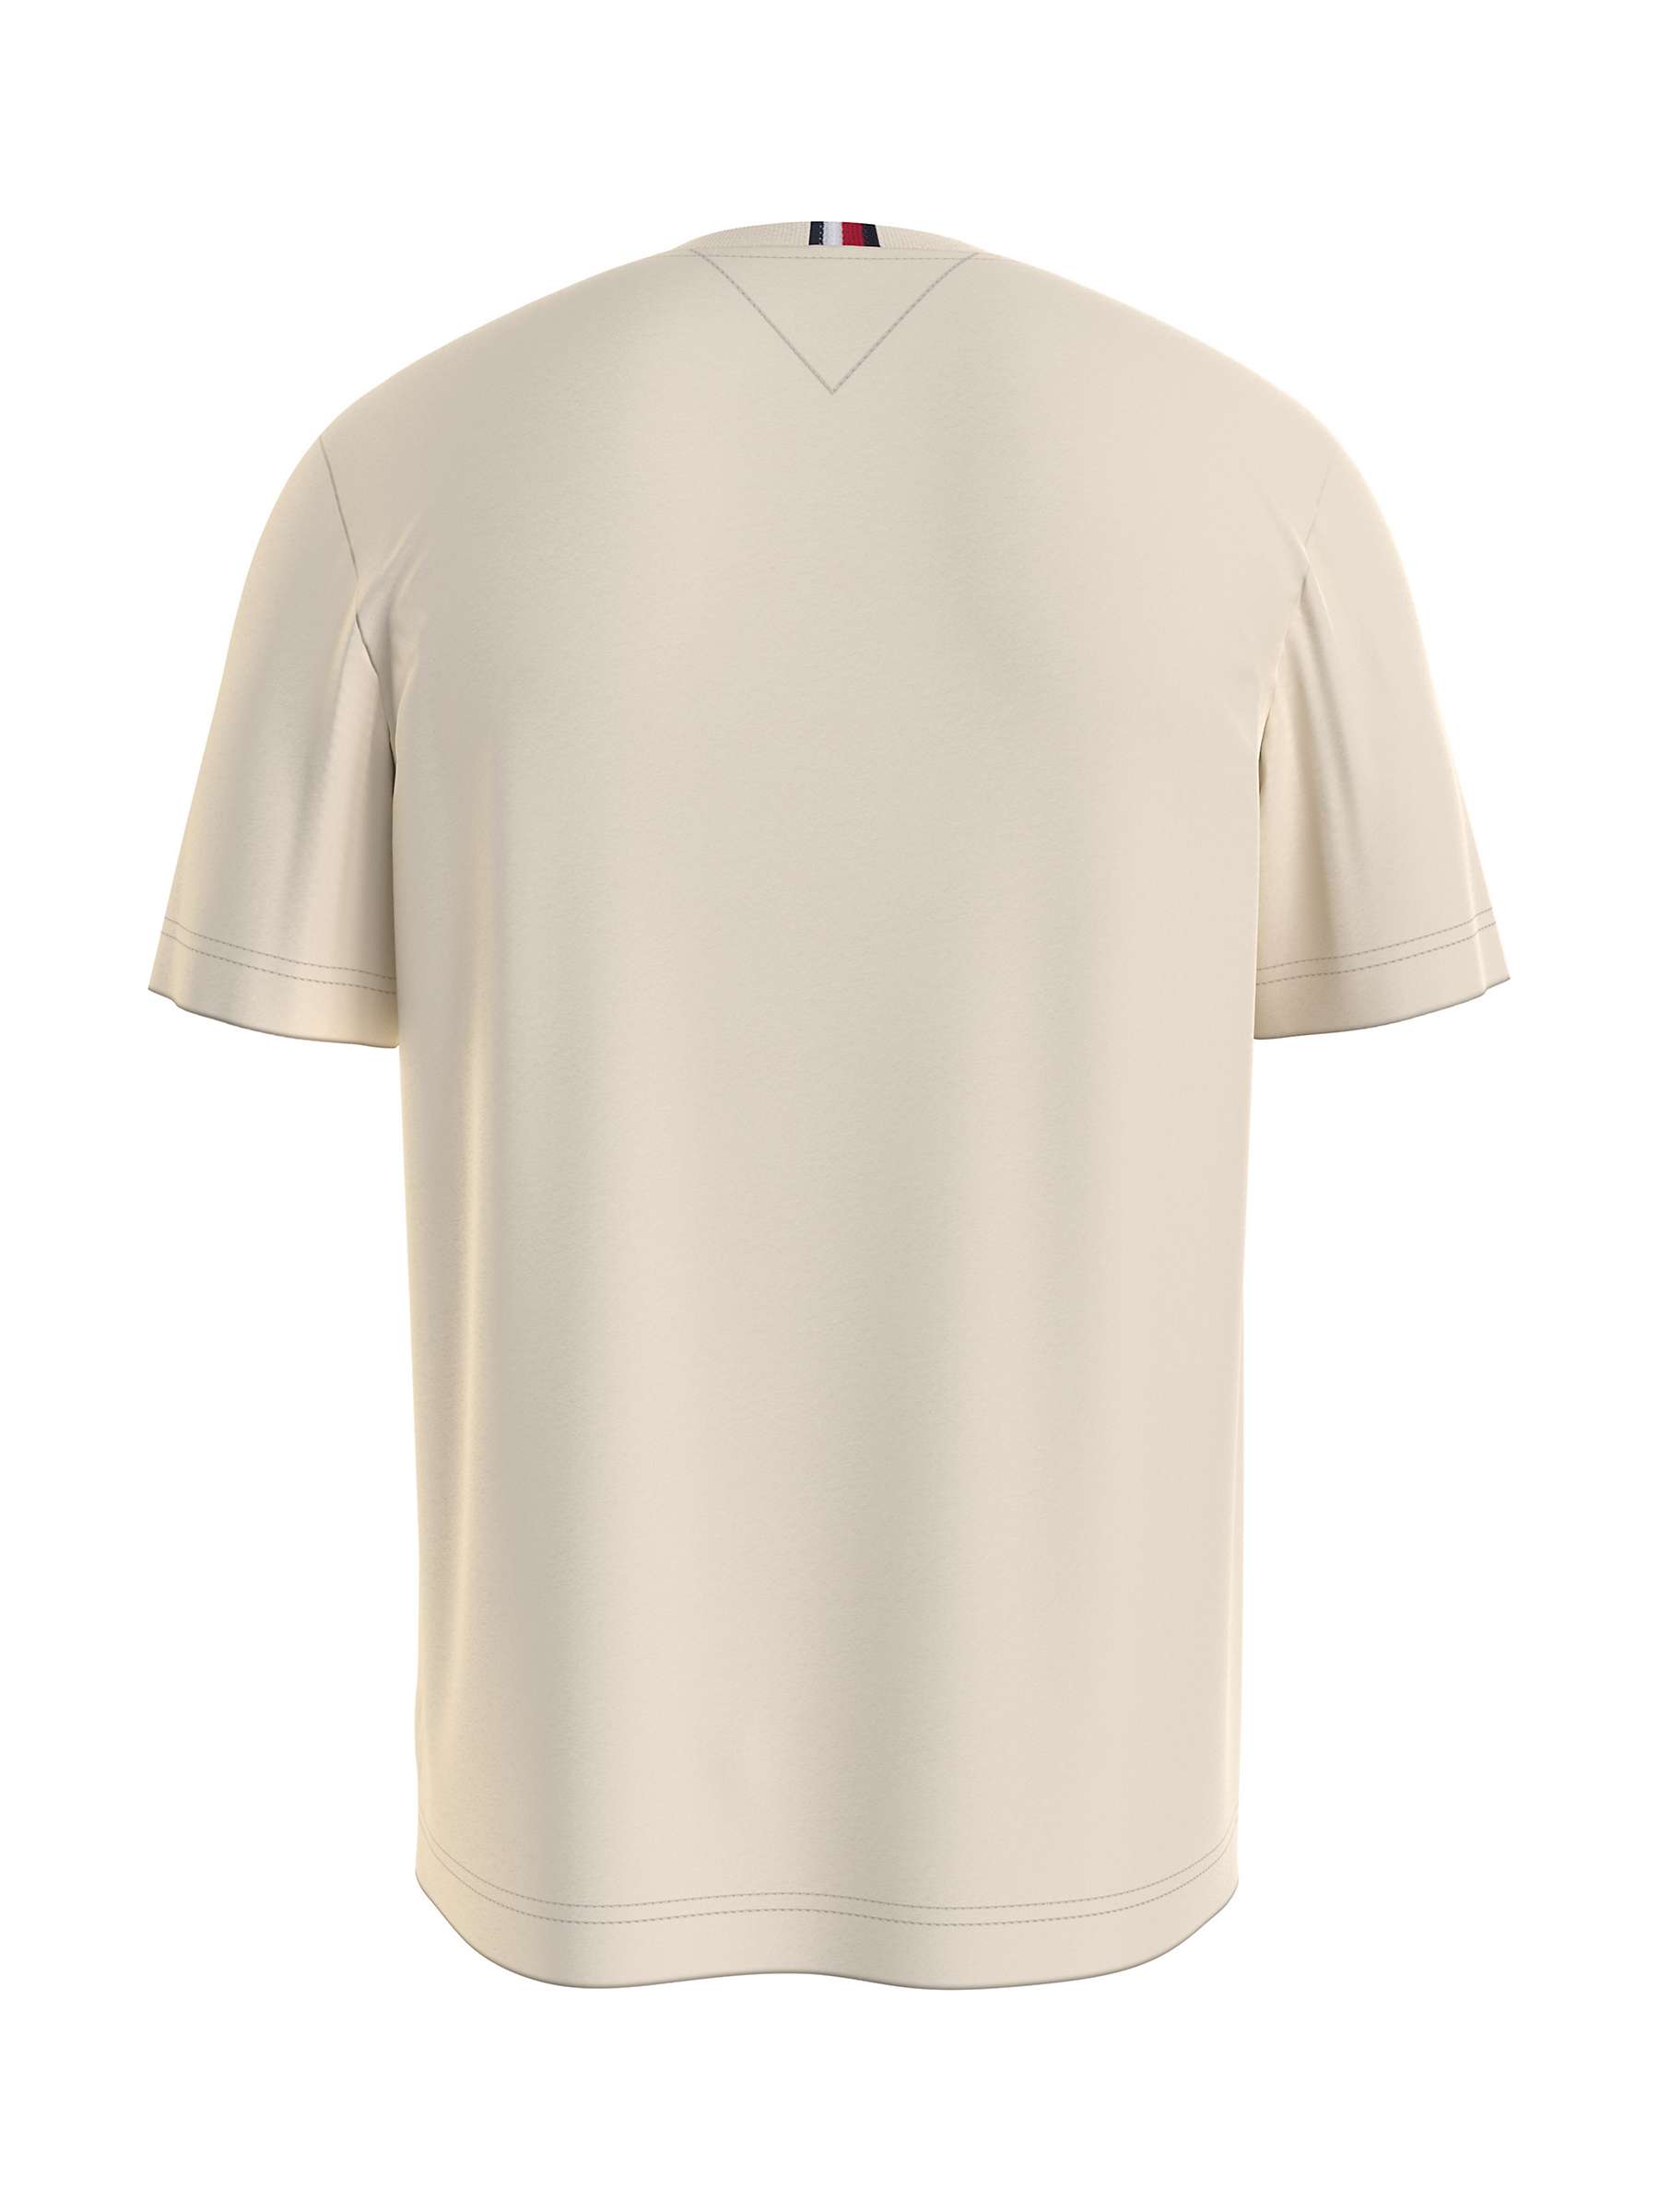 Buy Tommy Hilfiger Monogram T-Shirt, Calico Online at johnlewis.com